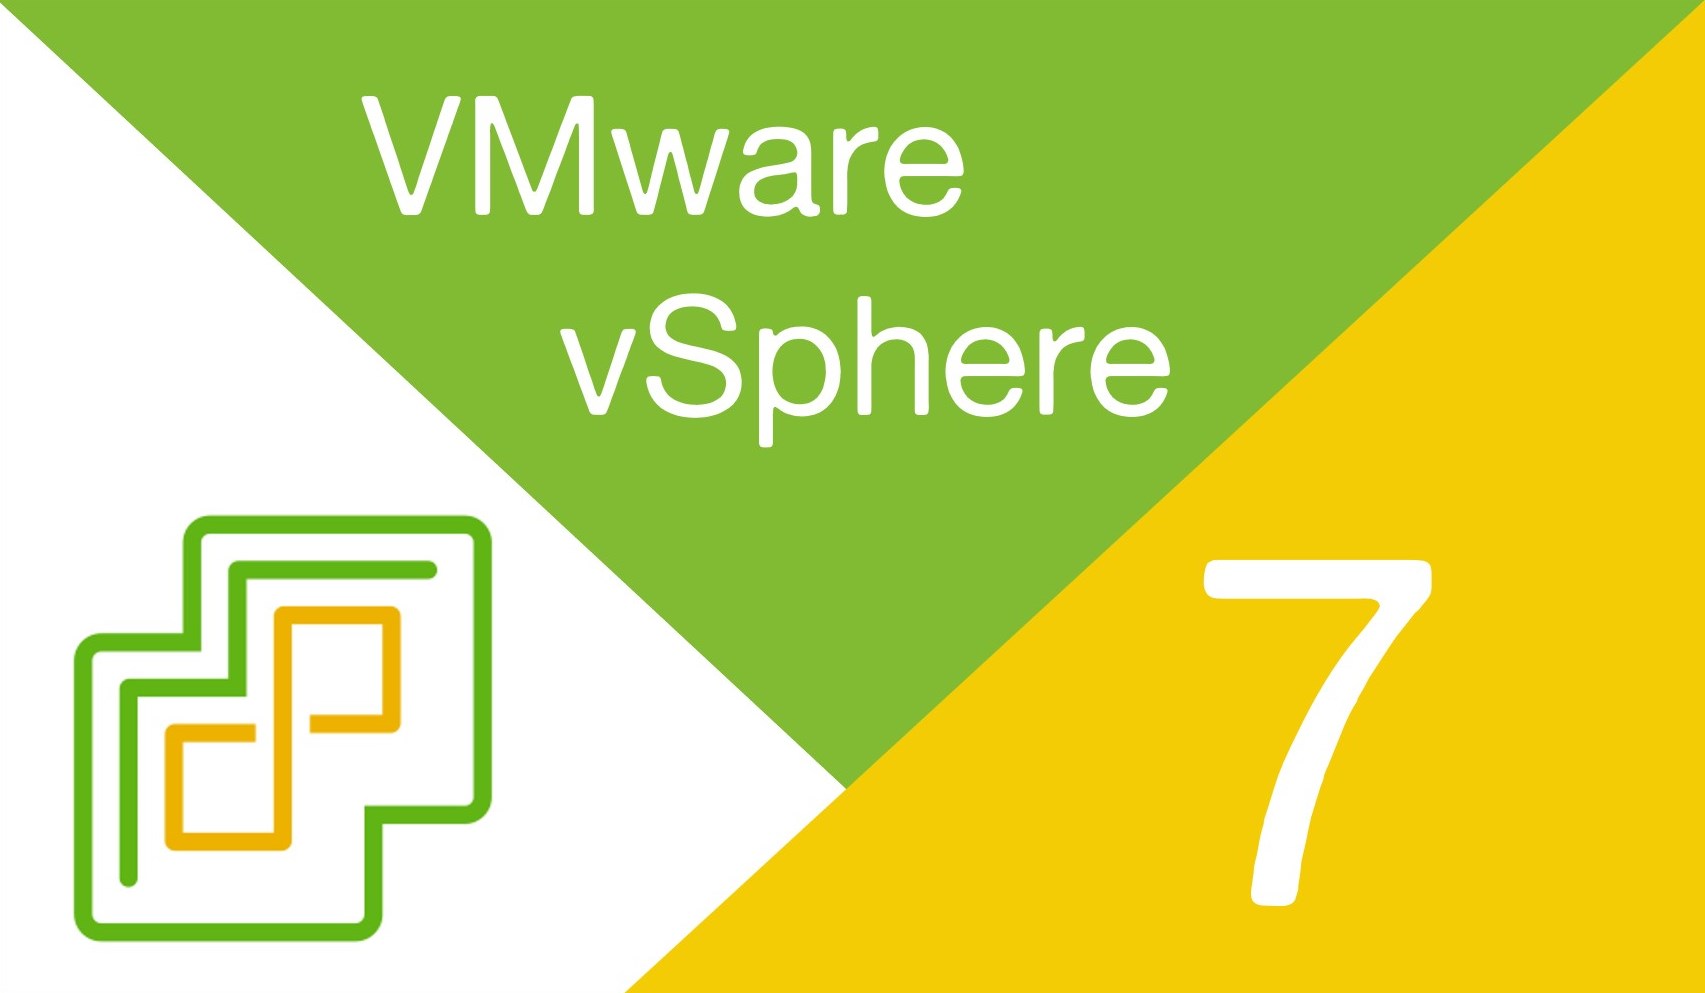 اموزش نصب vmware vsphere 7